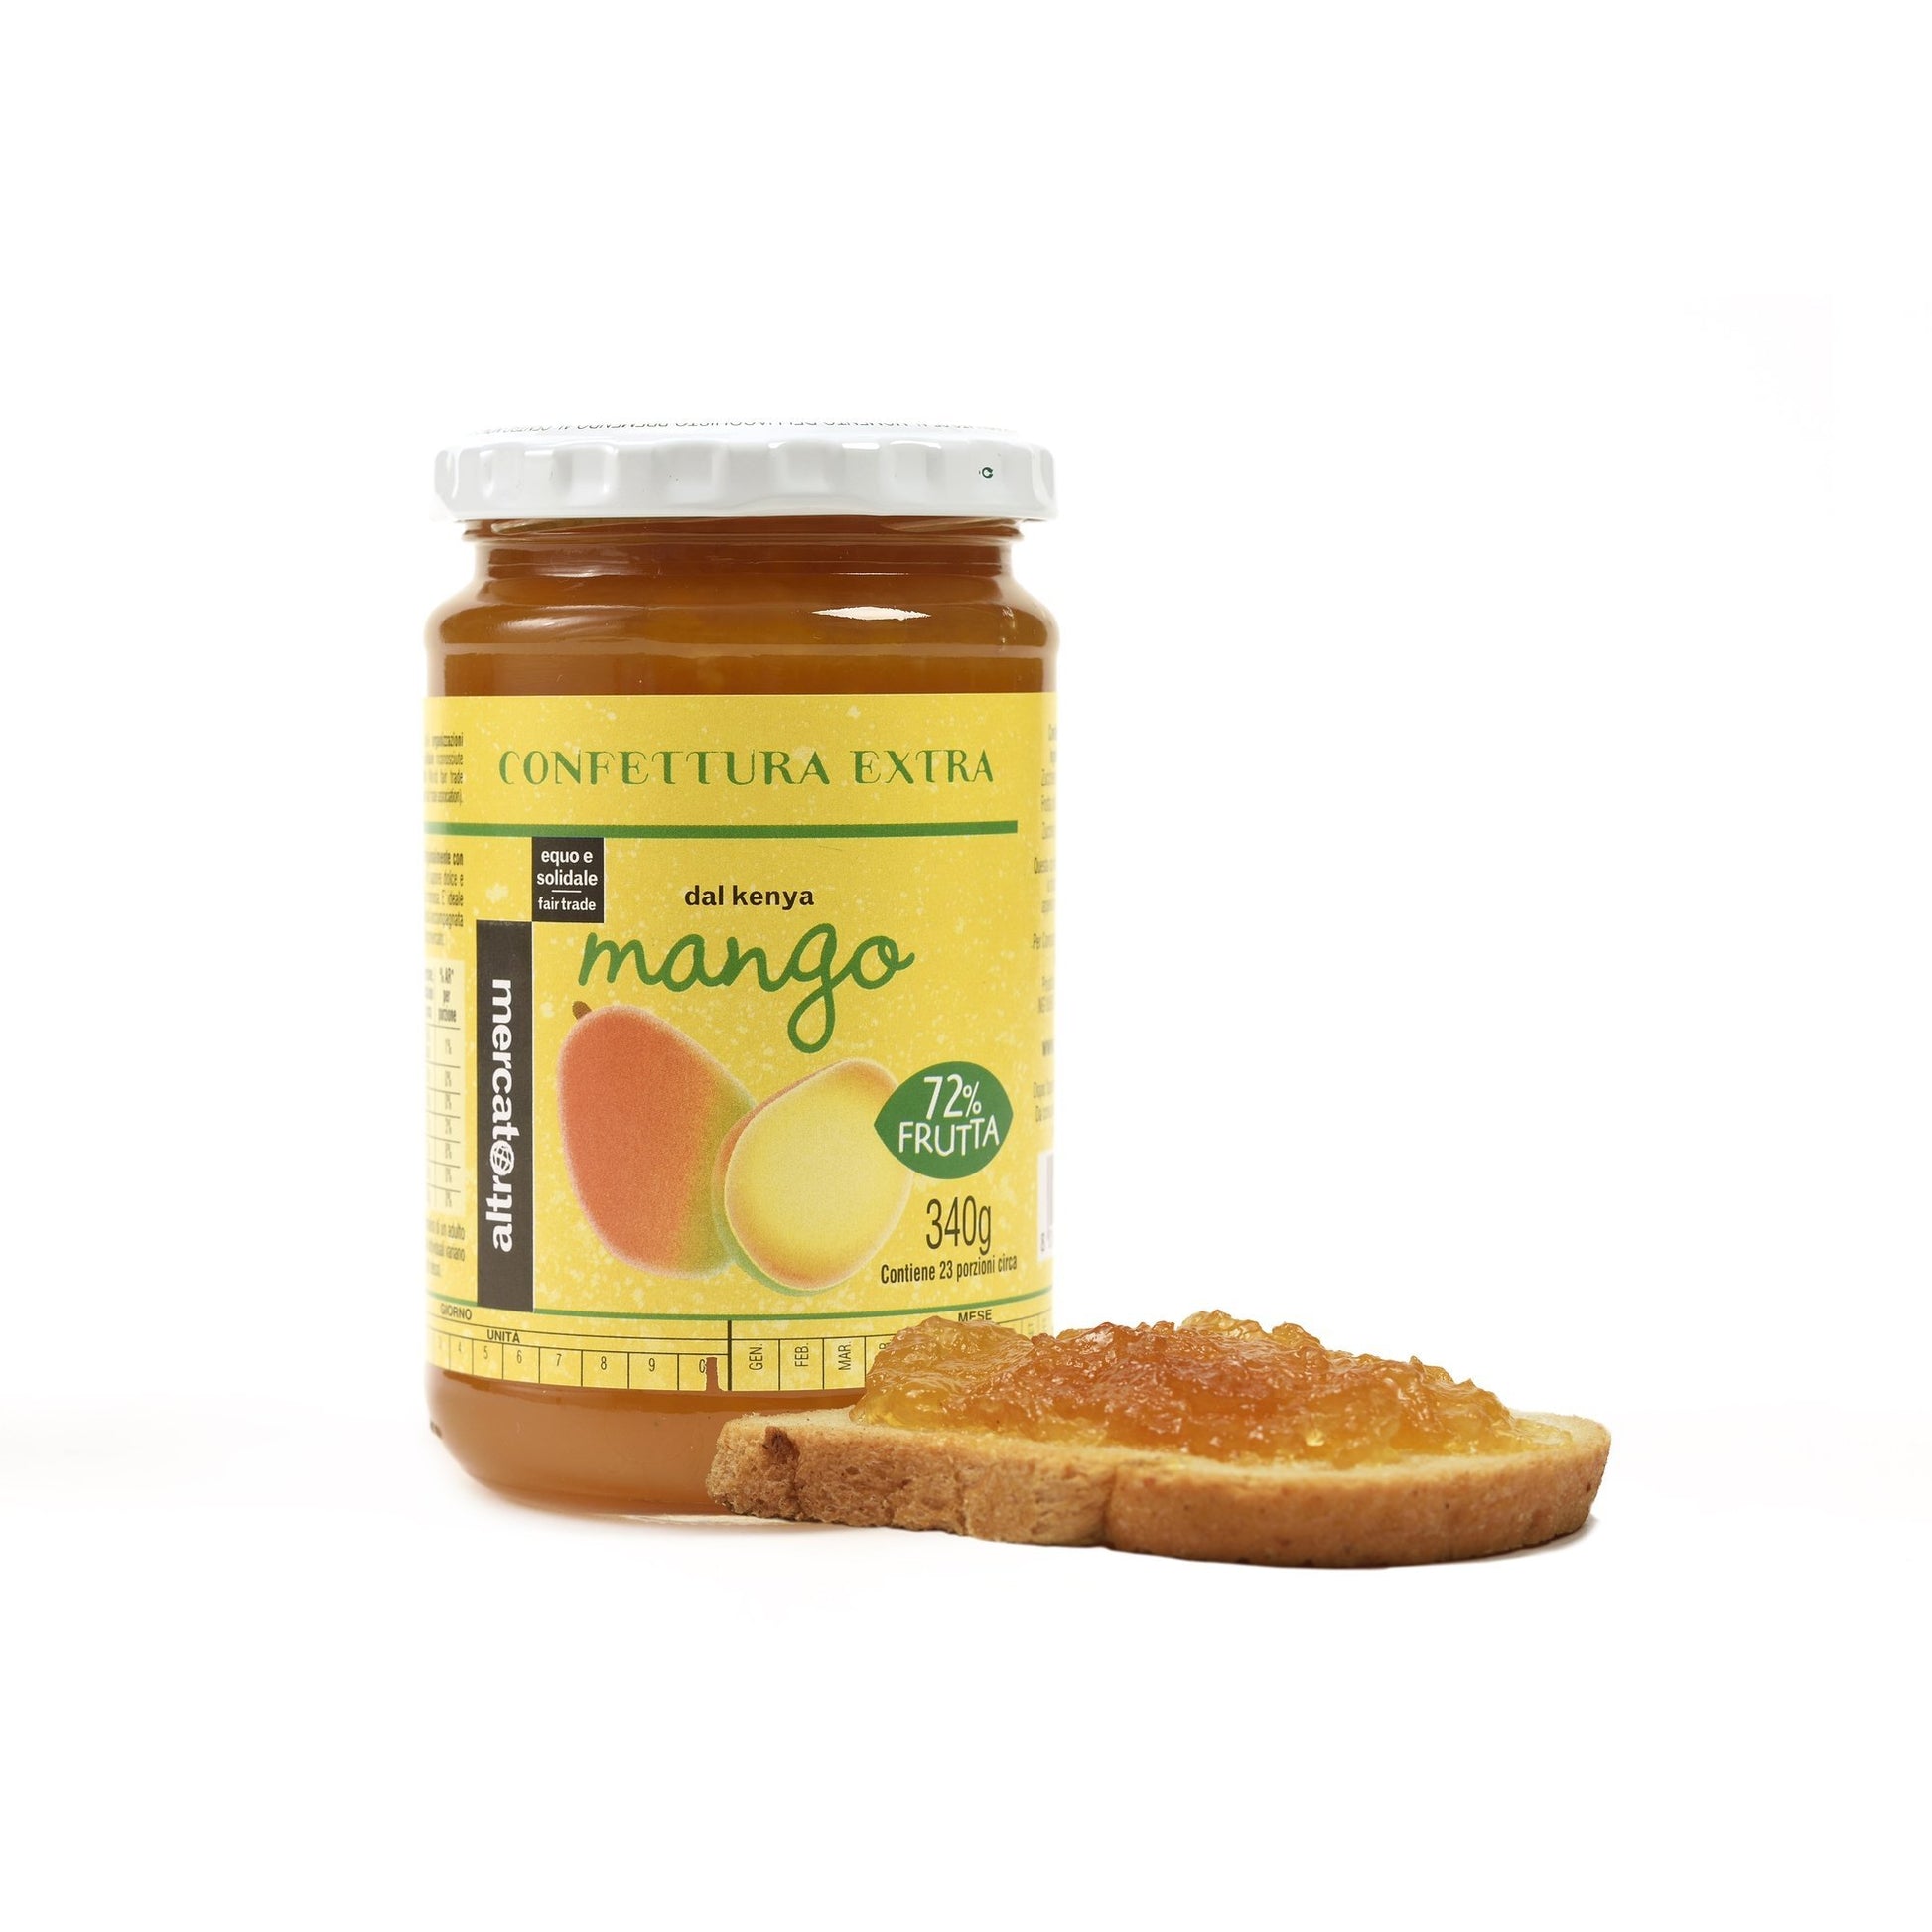 marmellata extra di mango con il 72% di frutta fresca e zucchero di canna proveniente dal Kenya prodotta dal commercio equo e solidale dolce cremosa e morbida adatta anche per dolci e crostate